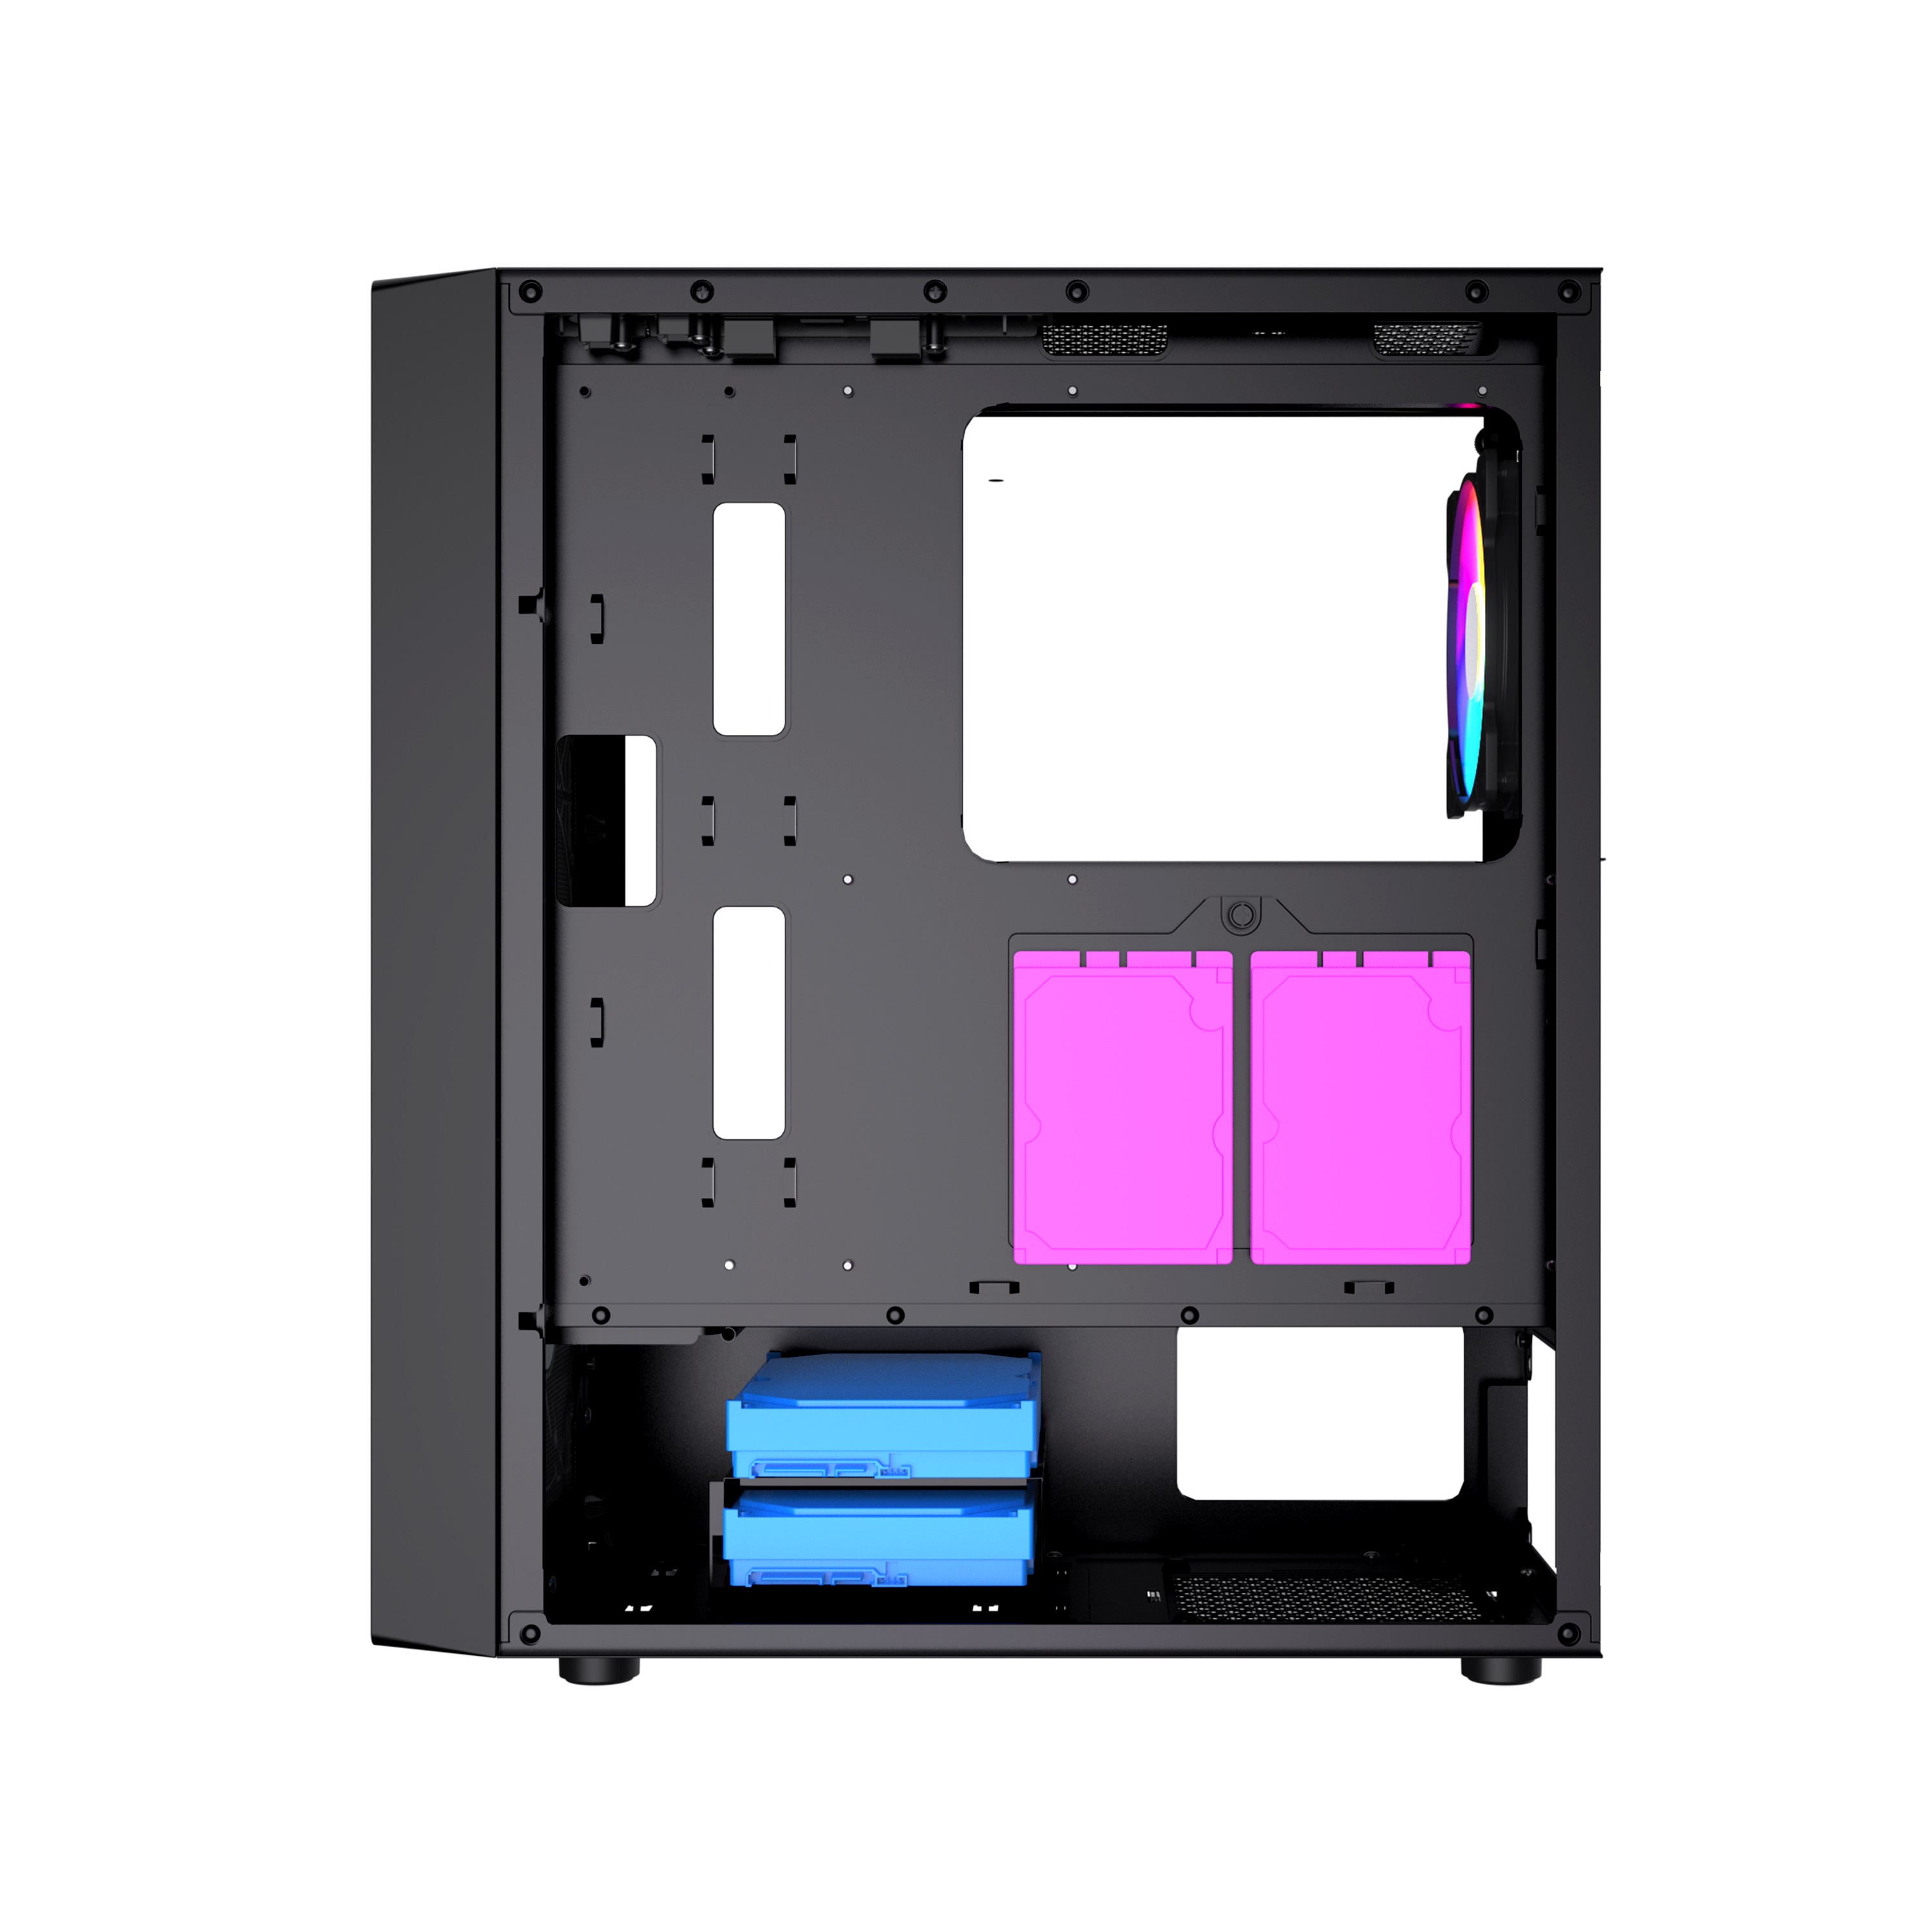 Корпус Powercase Mistral Evo, Tempered Glass, 1x 120mm PWM ARGB fan + ARGB Strip + 3x 120mm PWM non LED fan, чёрный, ATX  (CMIEB-F4S)